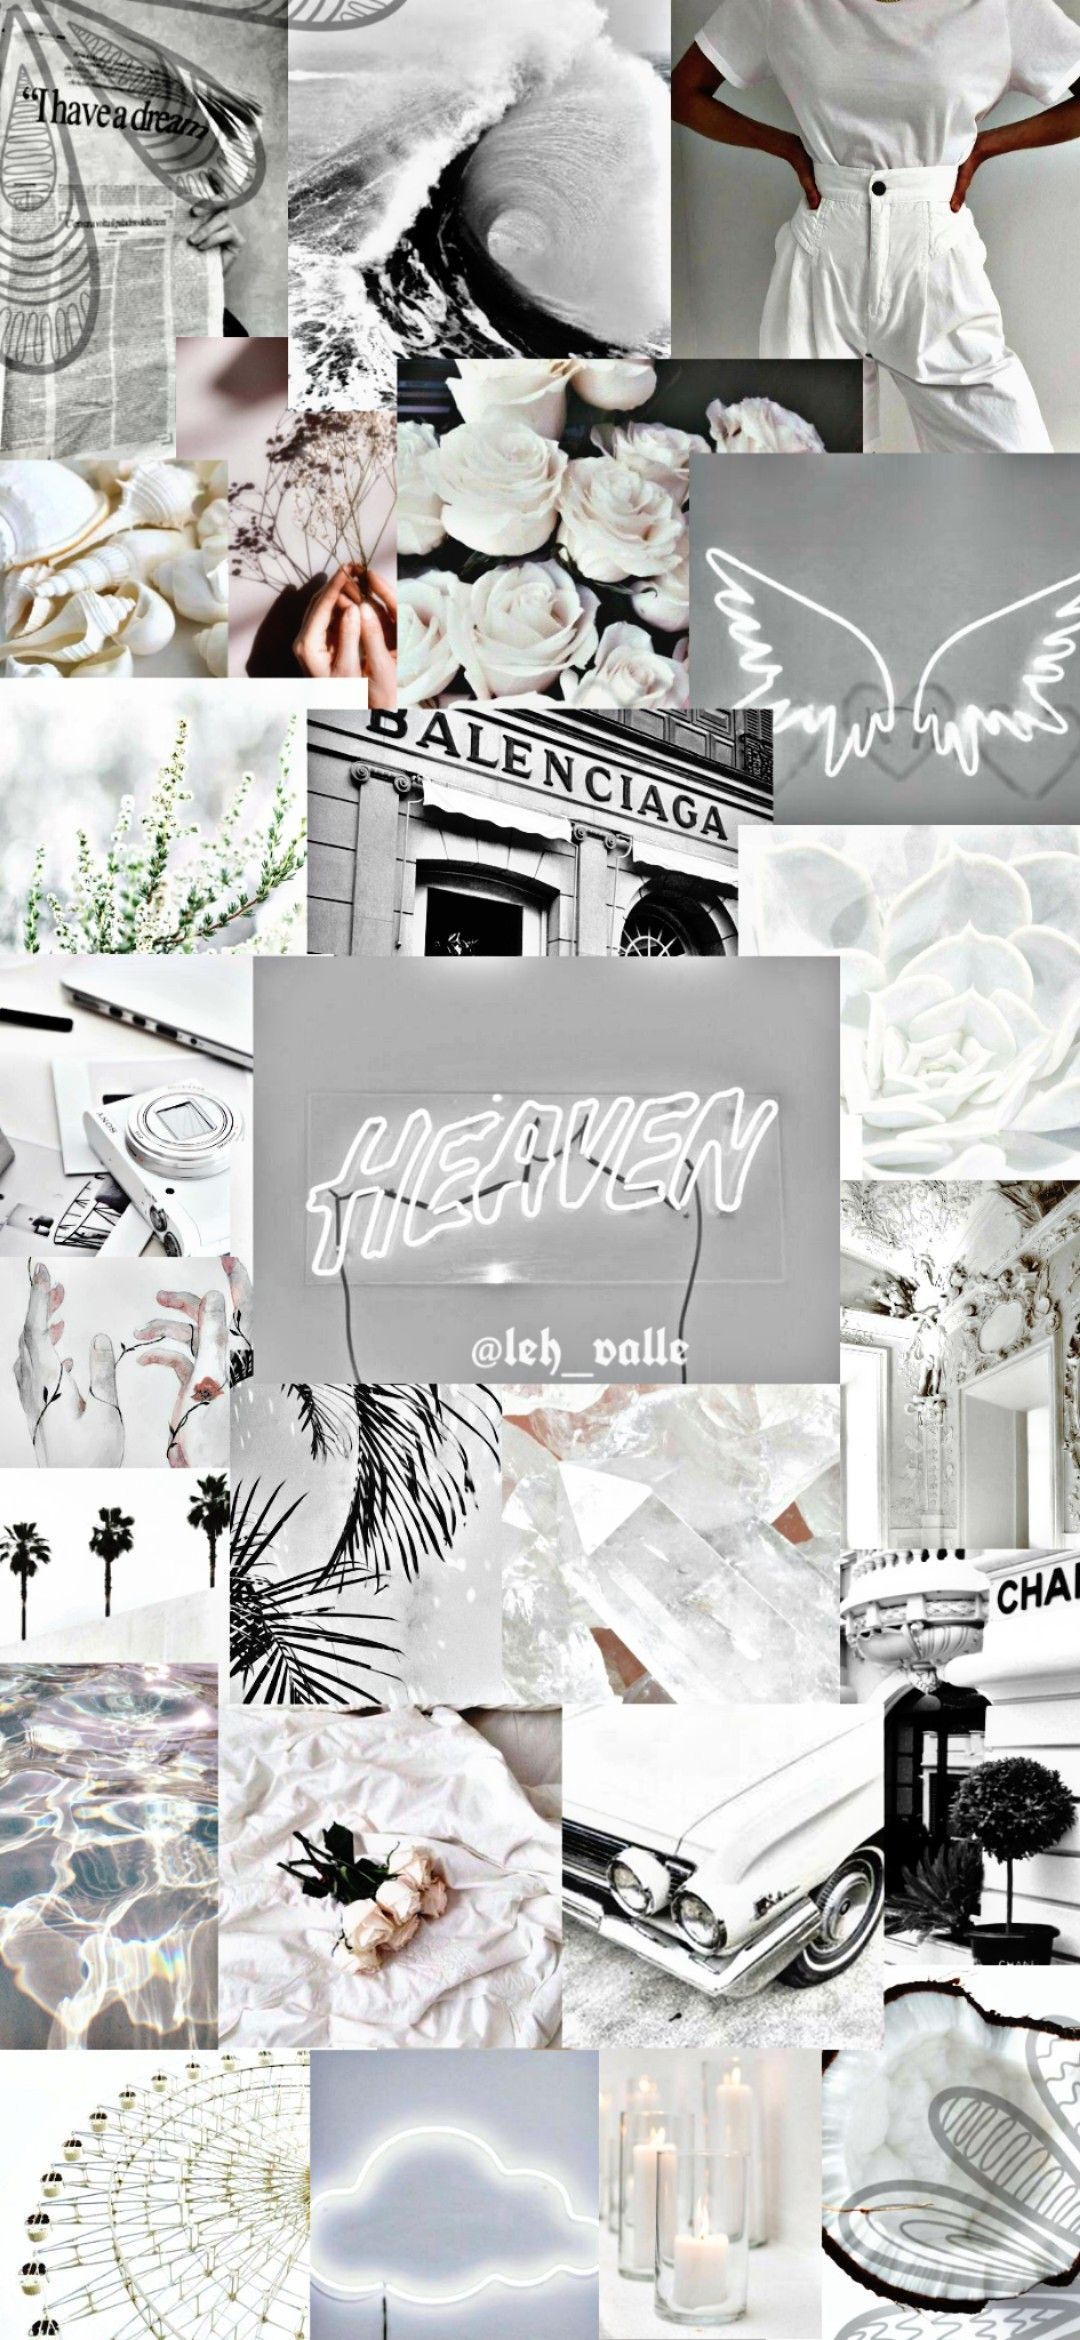  Schöne Weiß Hintergrundbild 1080x2340. Walppeaper white. Aesthetic iphone wallpaper, iPhone wallpaper tumblr aesthetic, iPhone wallpaper vintage